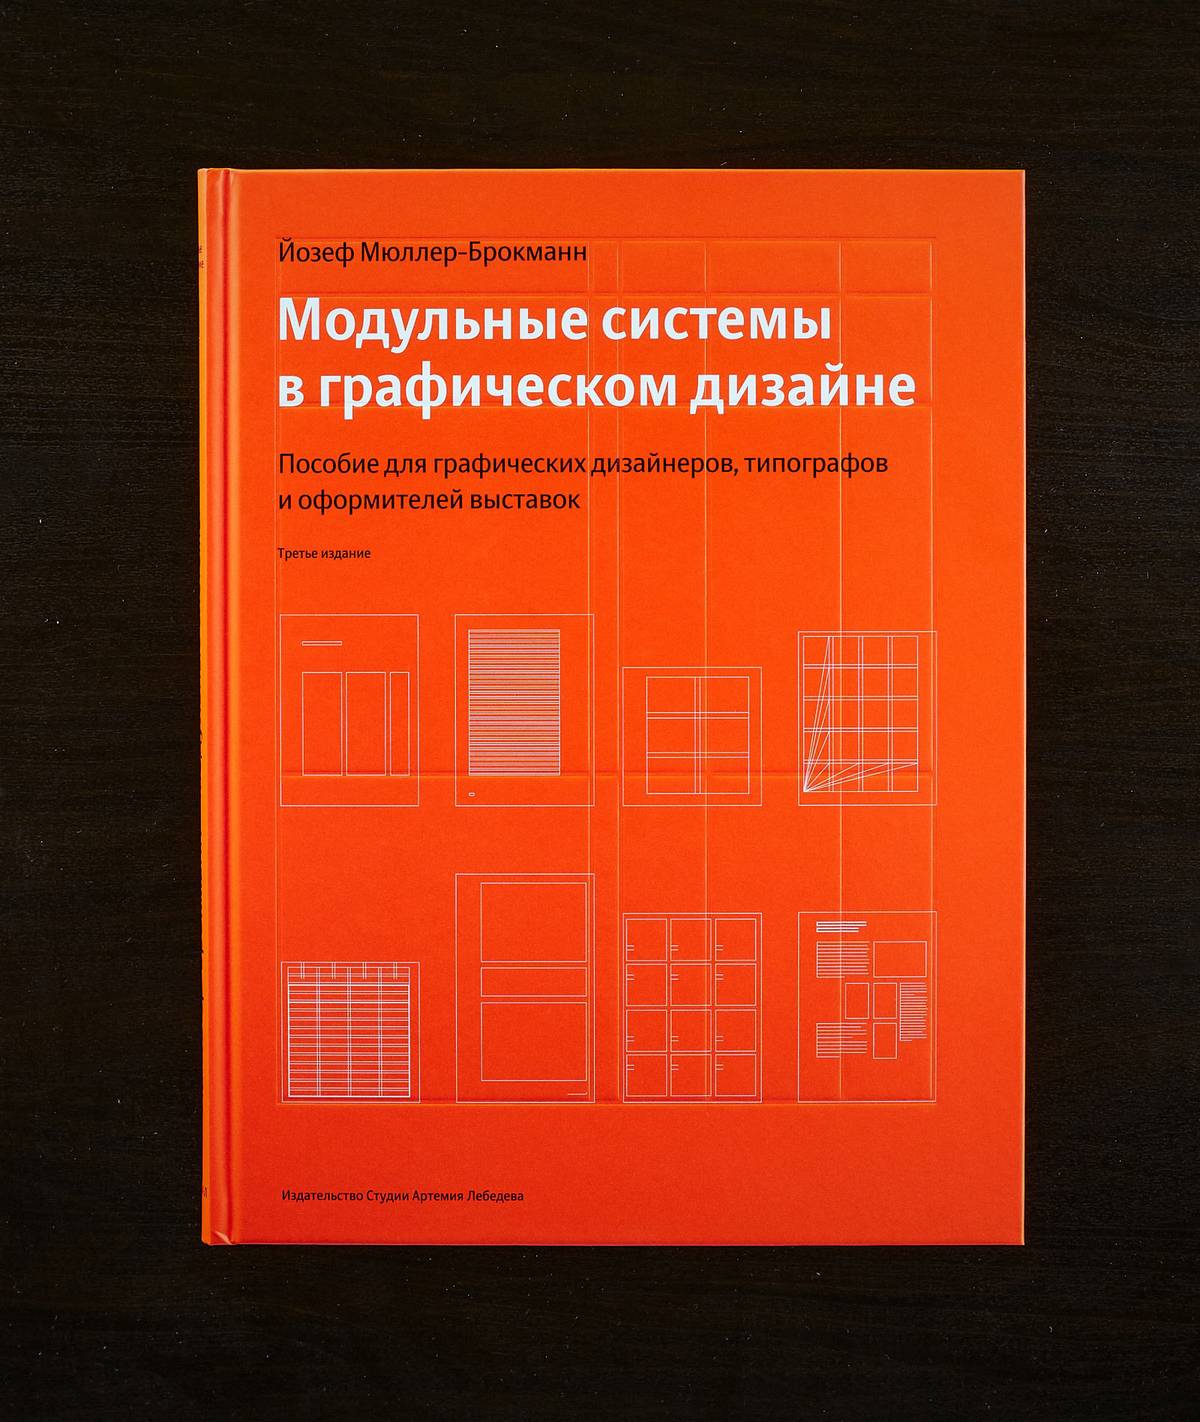 Обложка книги «Модульные системы в графическом дизайне». Источник: artlebedev.ru